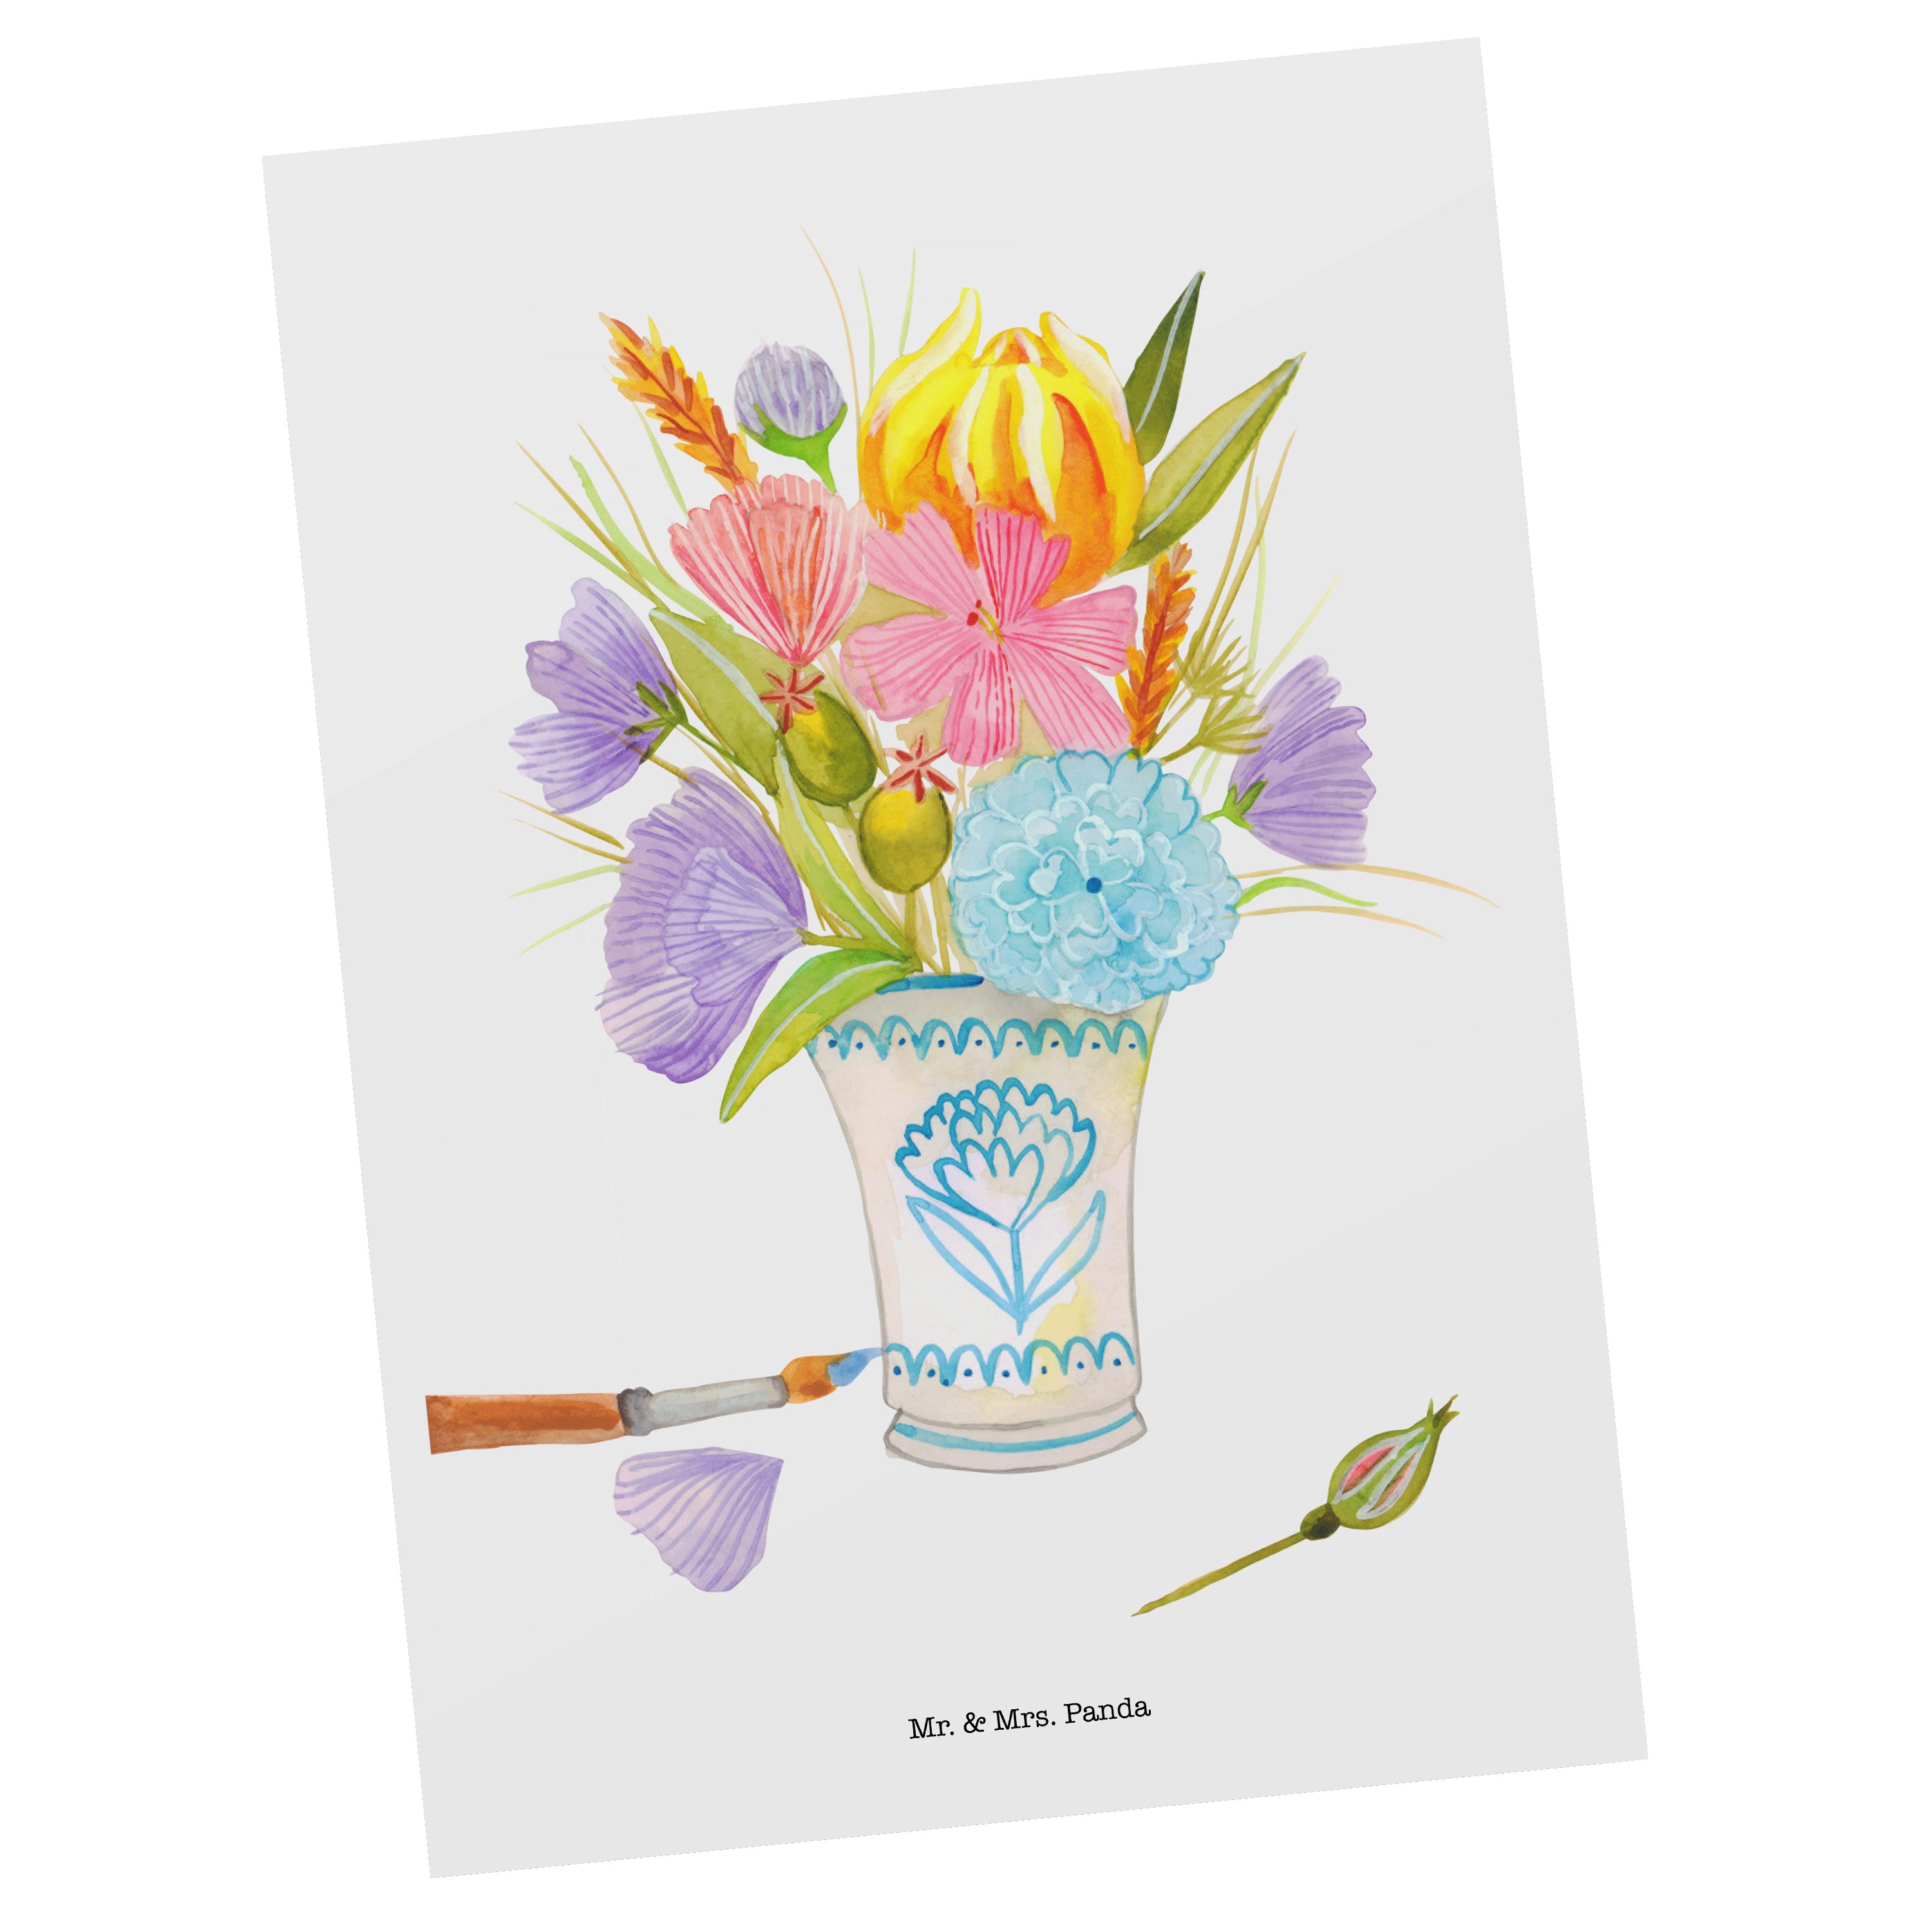 Mr. & Mrs. Panda Postkarte Blumenvase - Geschenk, Bunt, Einladung, Grußkarte, Einladungskarte, D